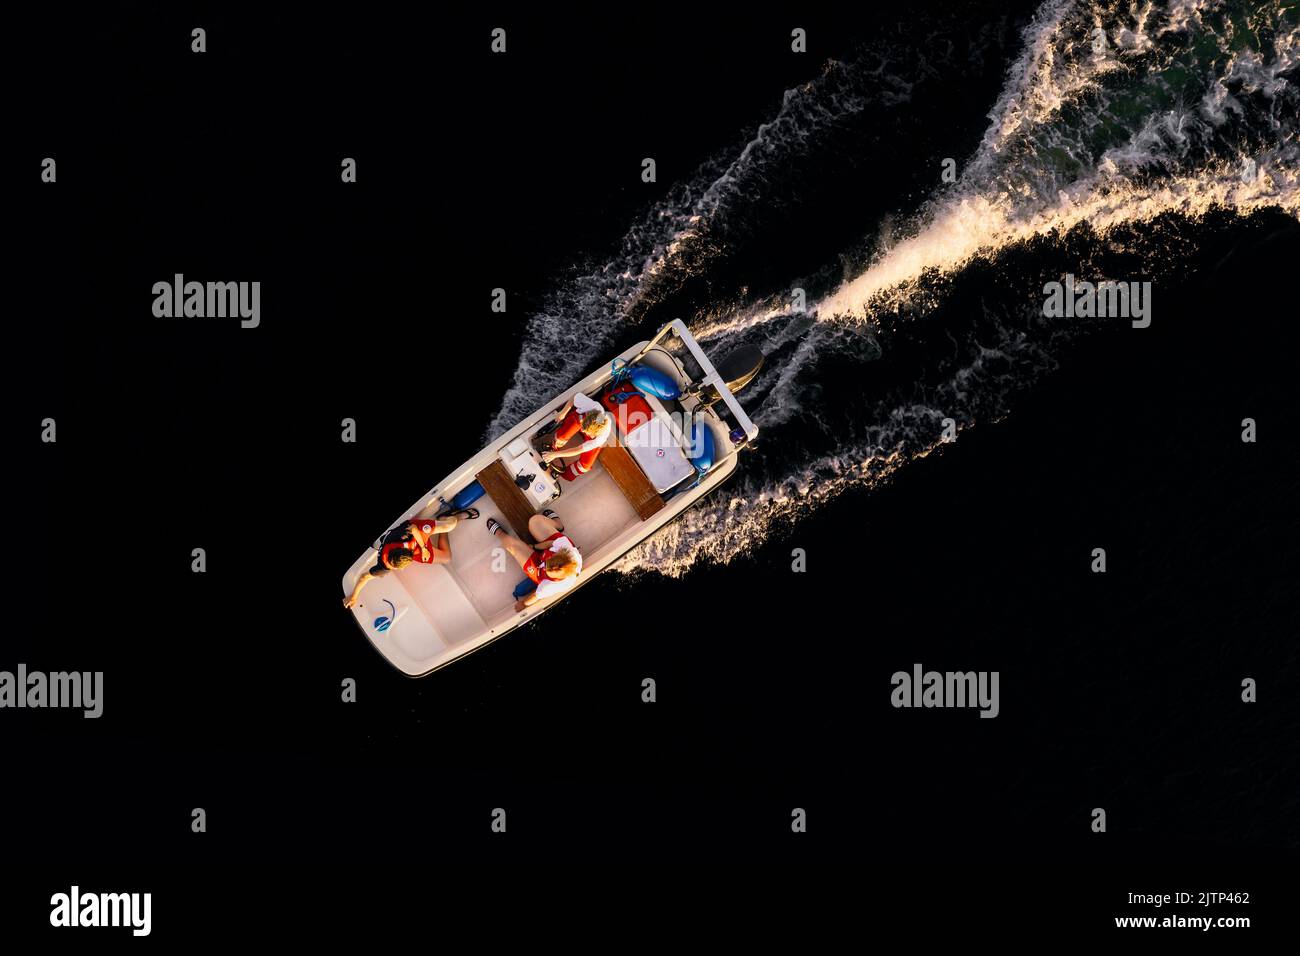 Prise de vue aérienne d'un bateau à moteur de sauvetage en eau à la lumière du soir. Banque D'Images